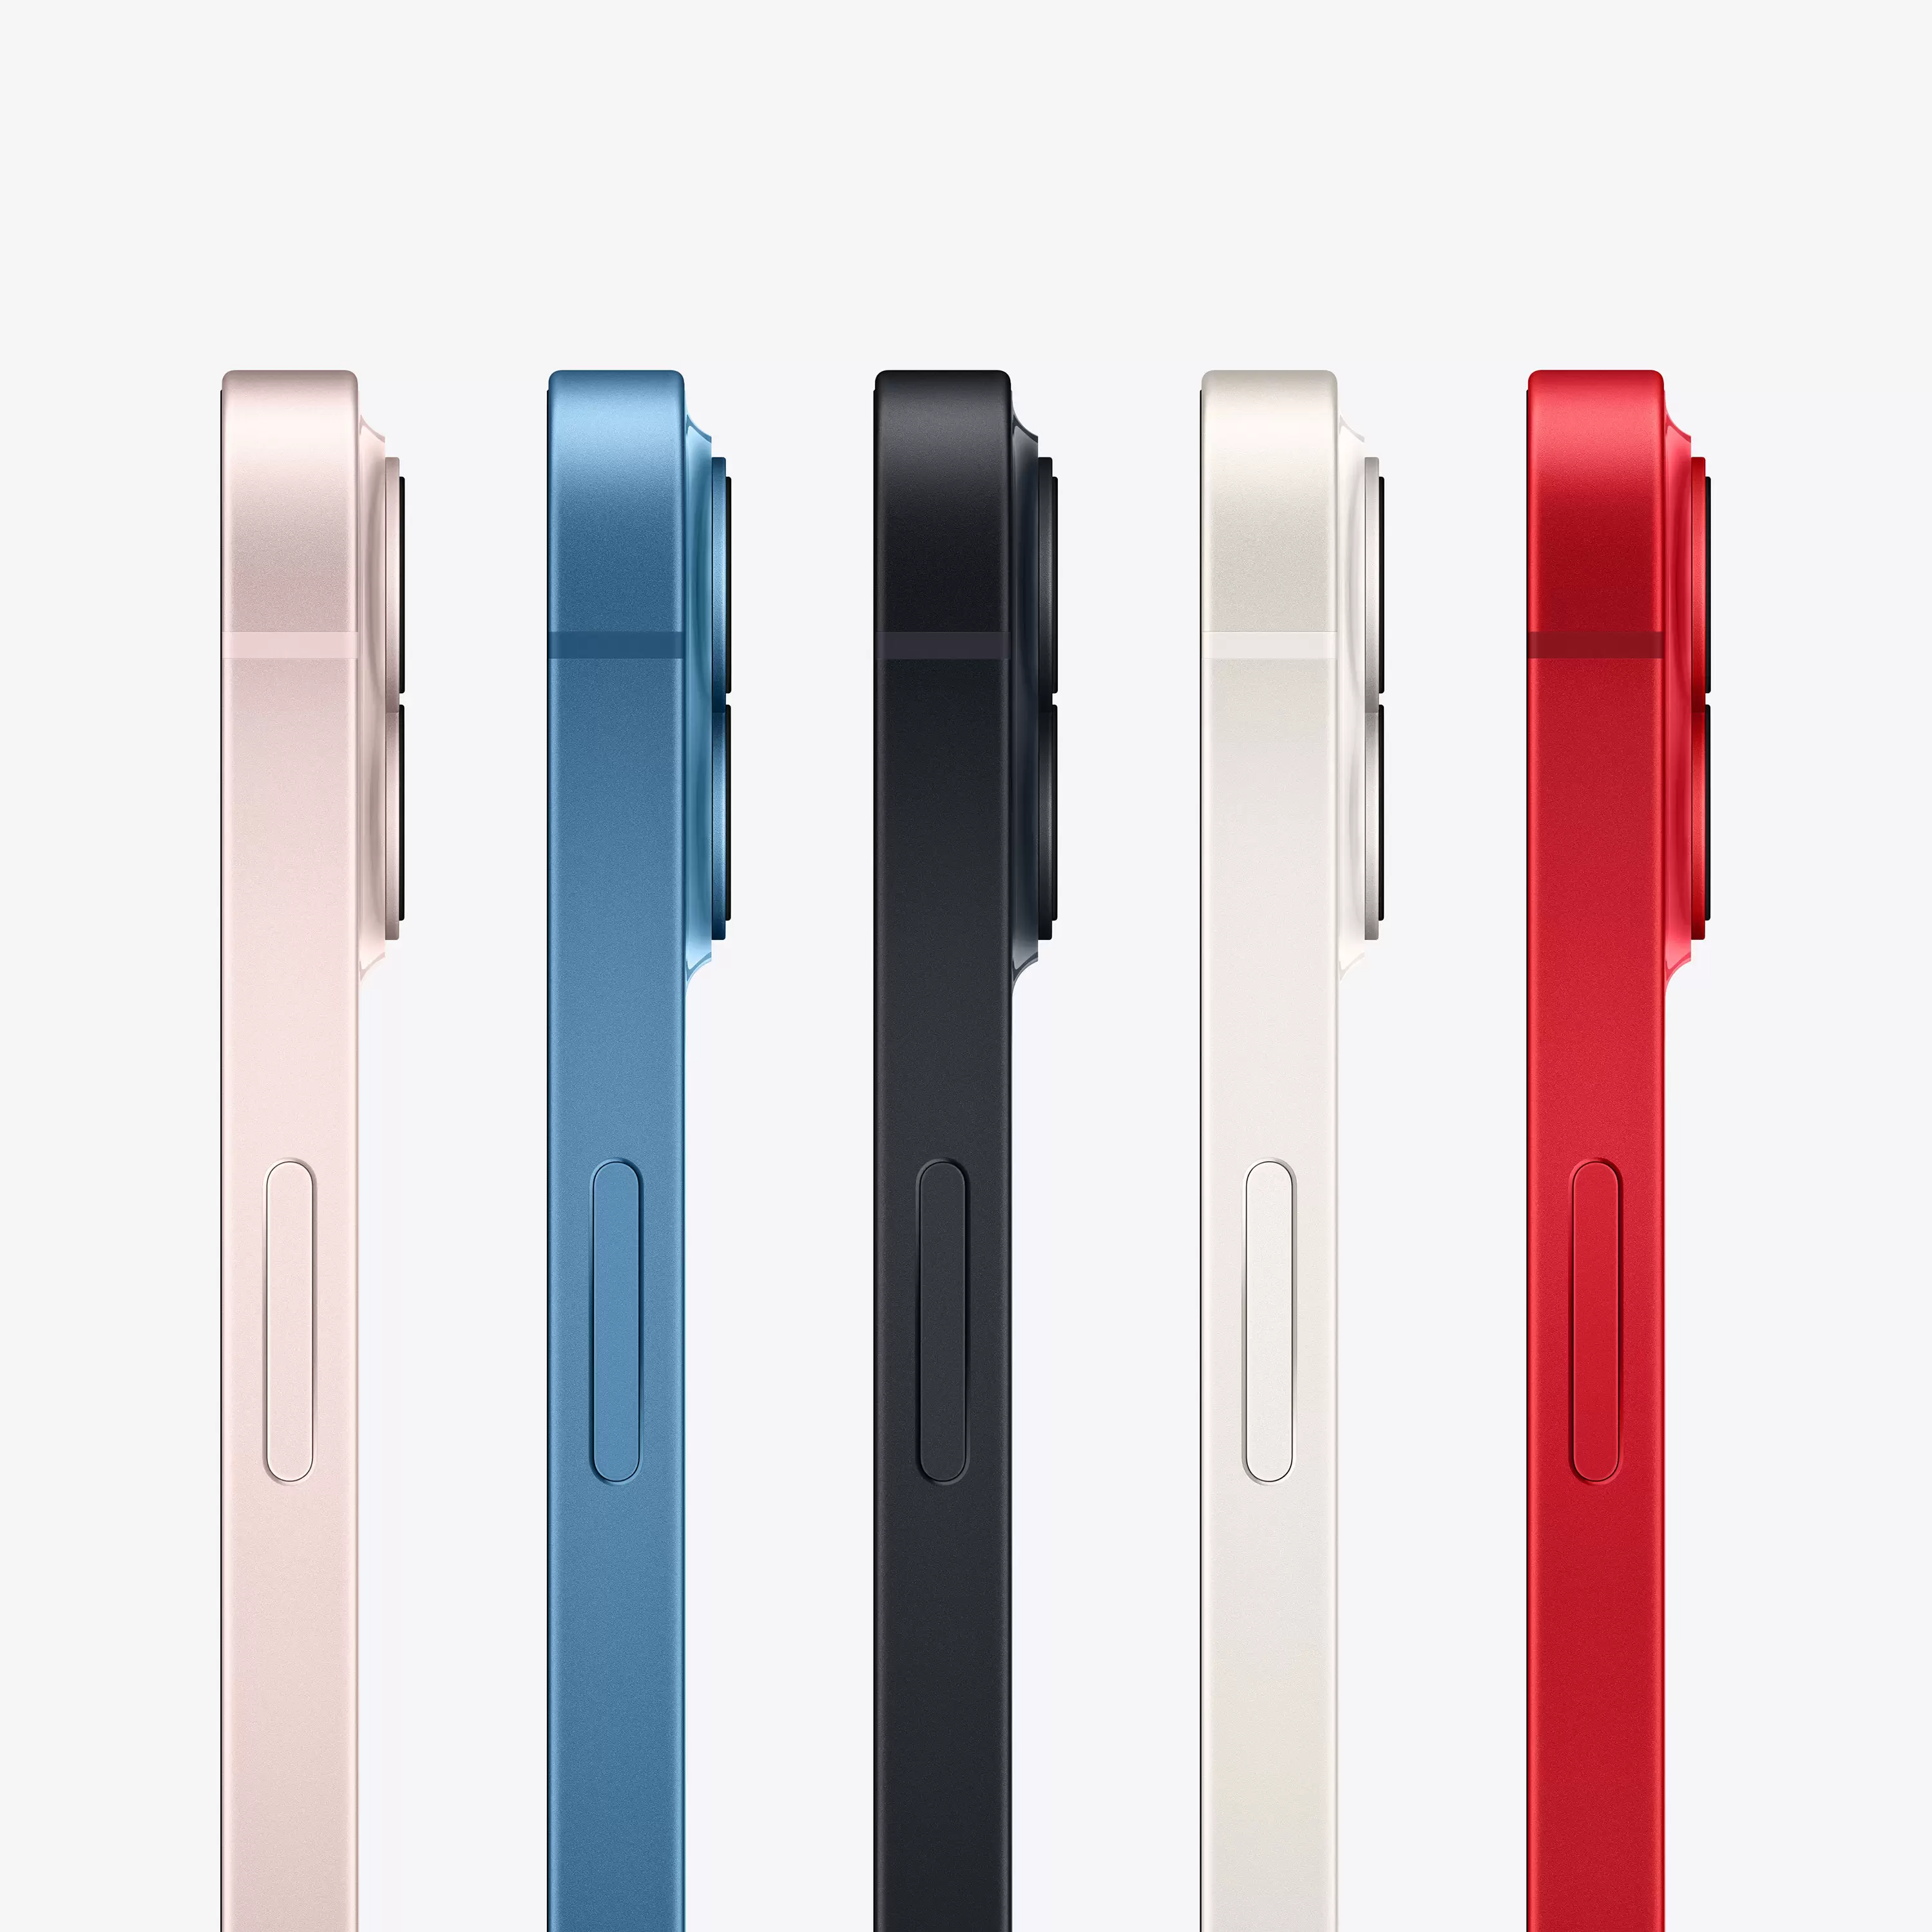 Apple iPhone 13 mini 256GB -Красный | Магазин Apple